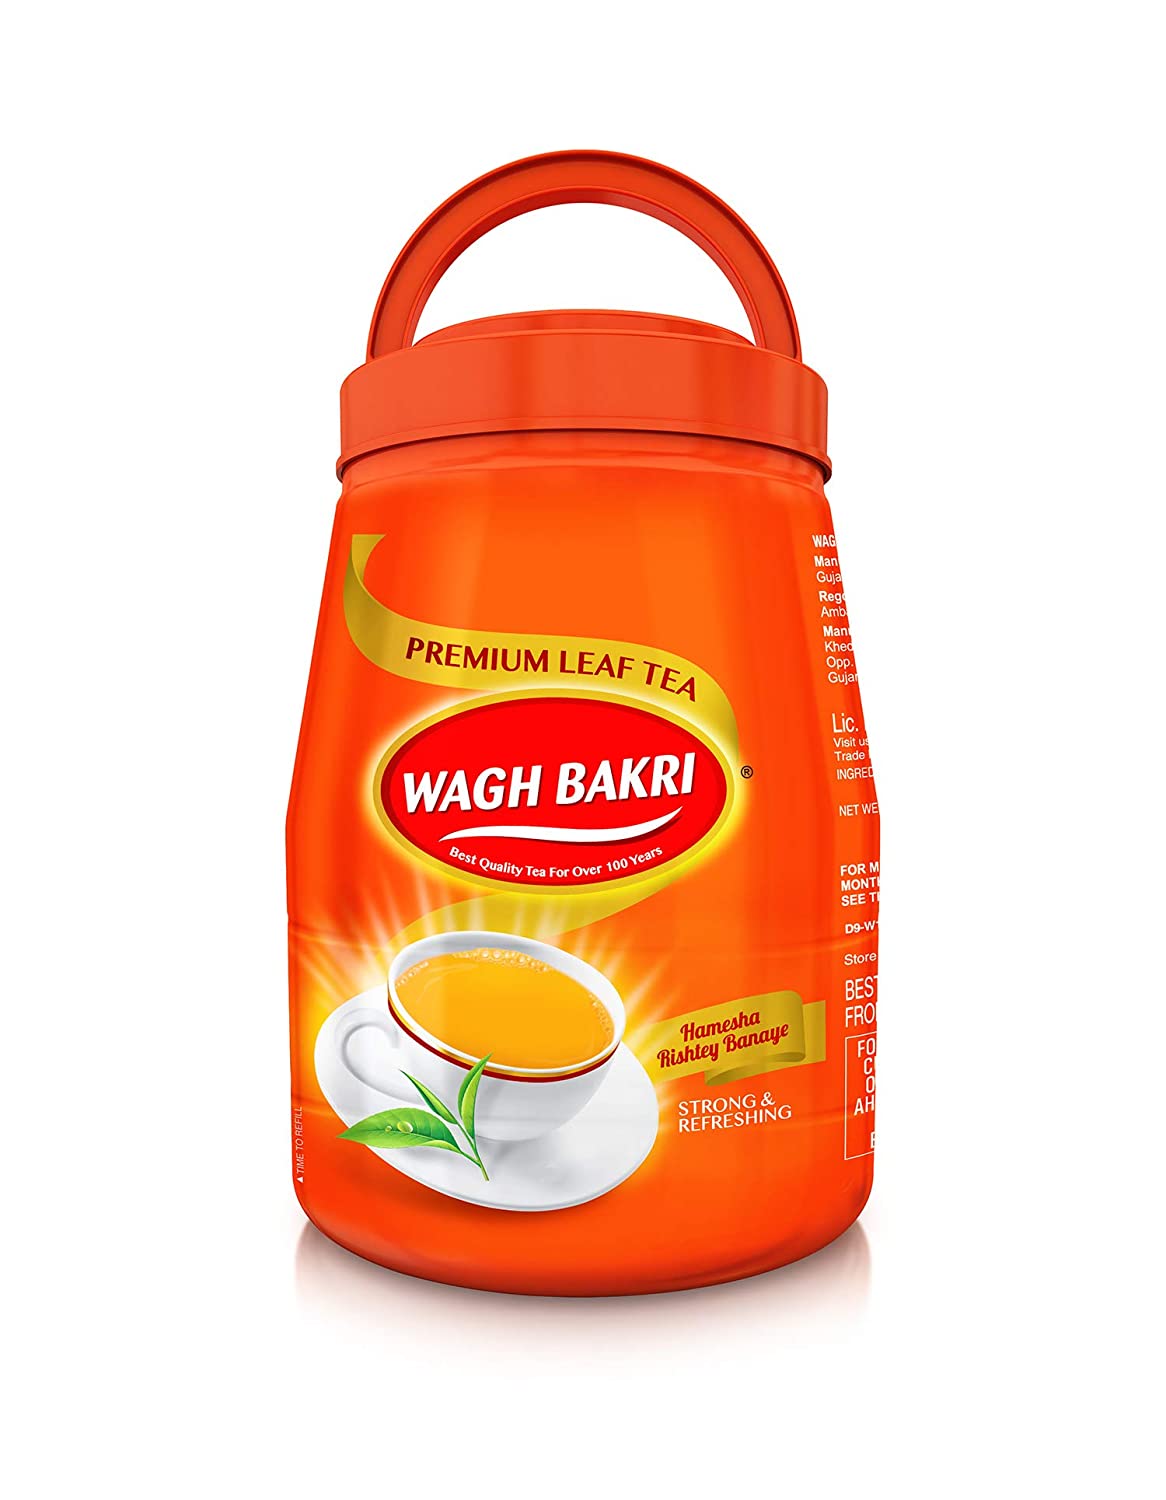 Wagh Bakri Premium Leaf Tea Jar Image